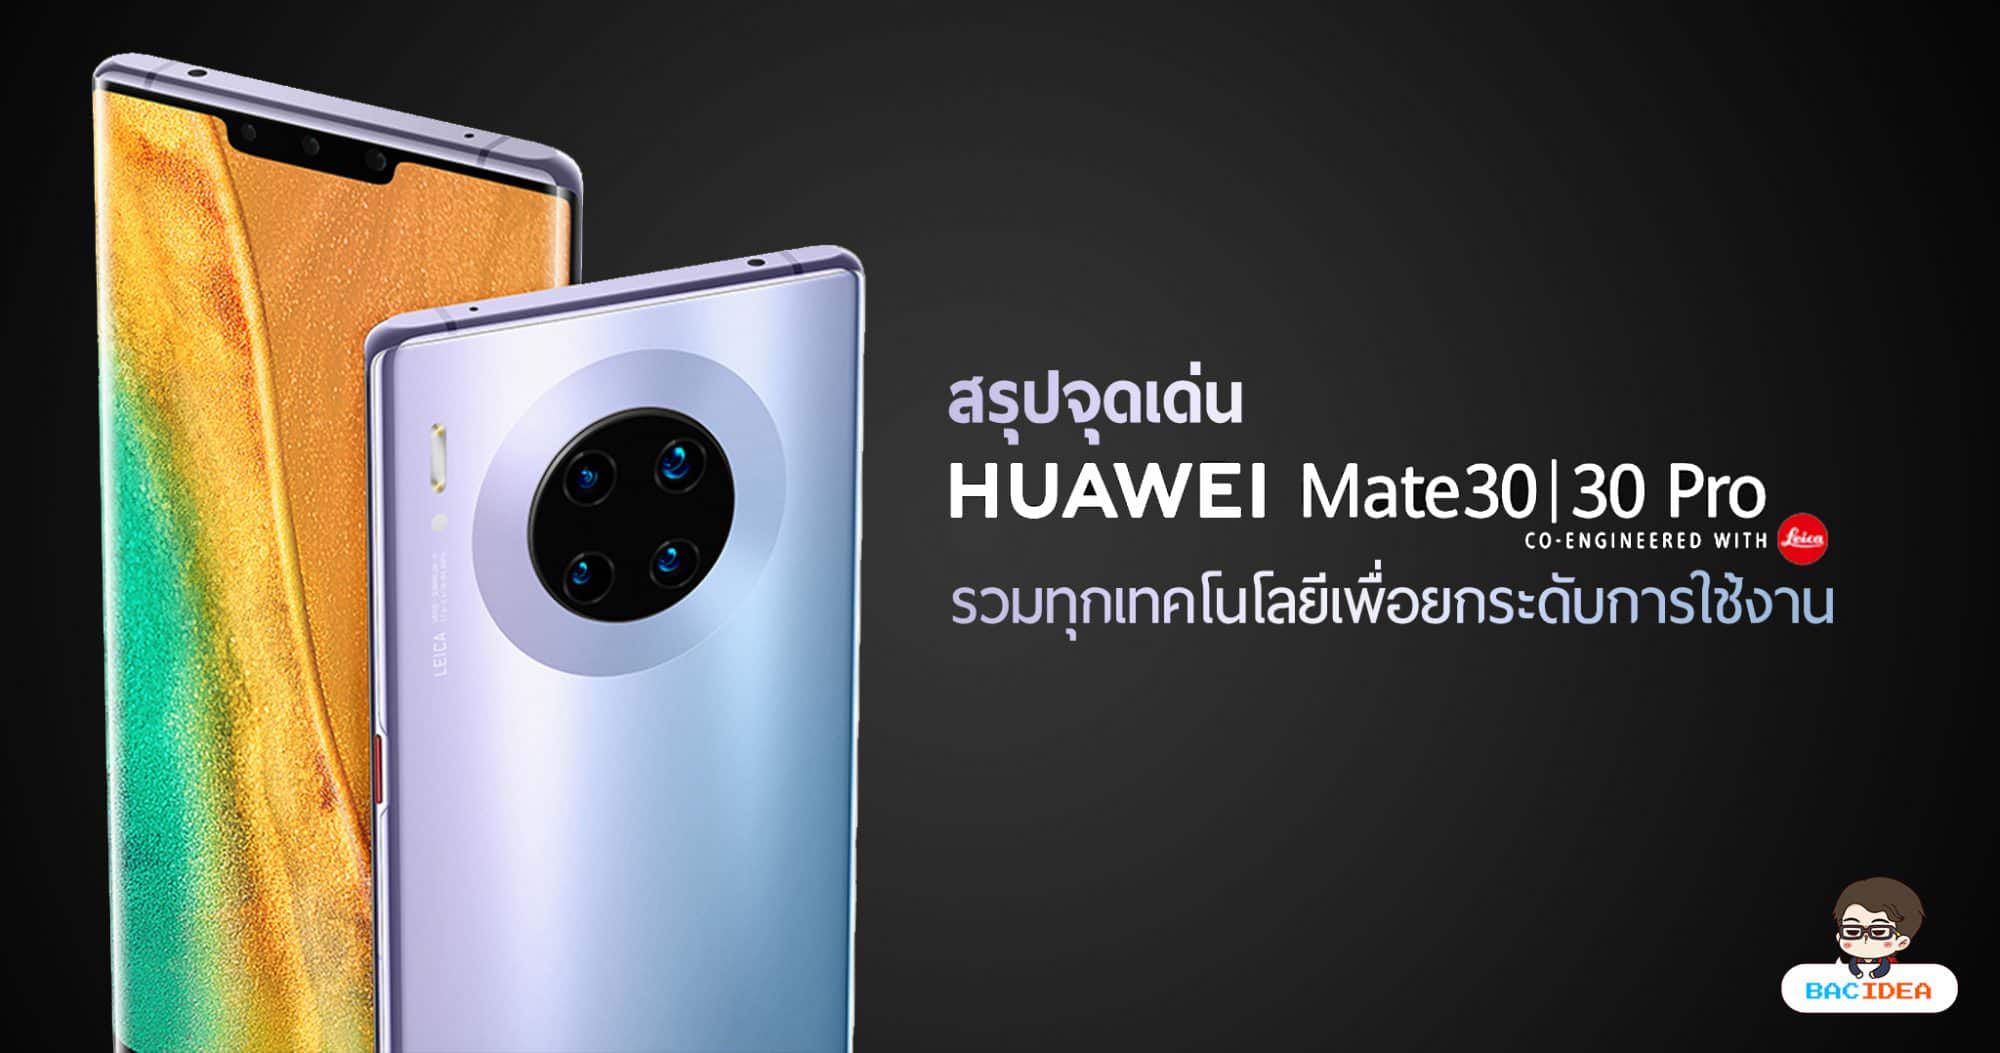 สรุปจุดเด่น HUAWEI Mate 30 Series รวมทุกเทคโนโลยีเพื่อยกระดับการใช้งาน 1